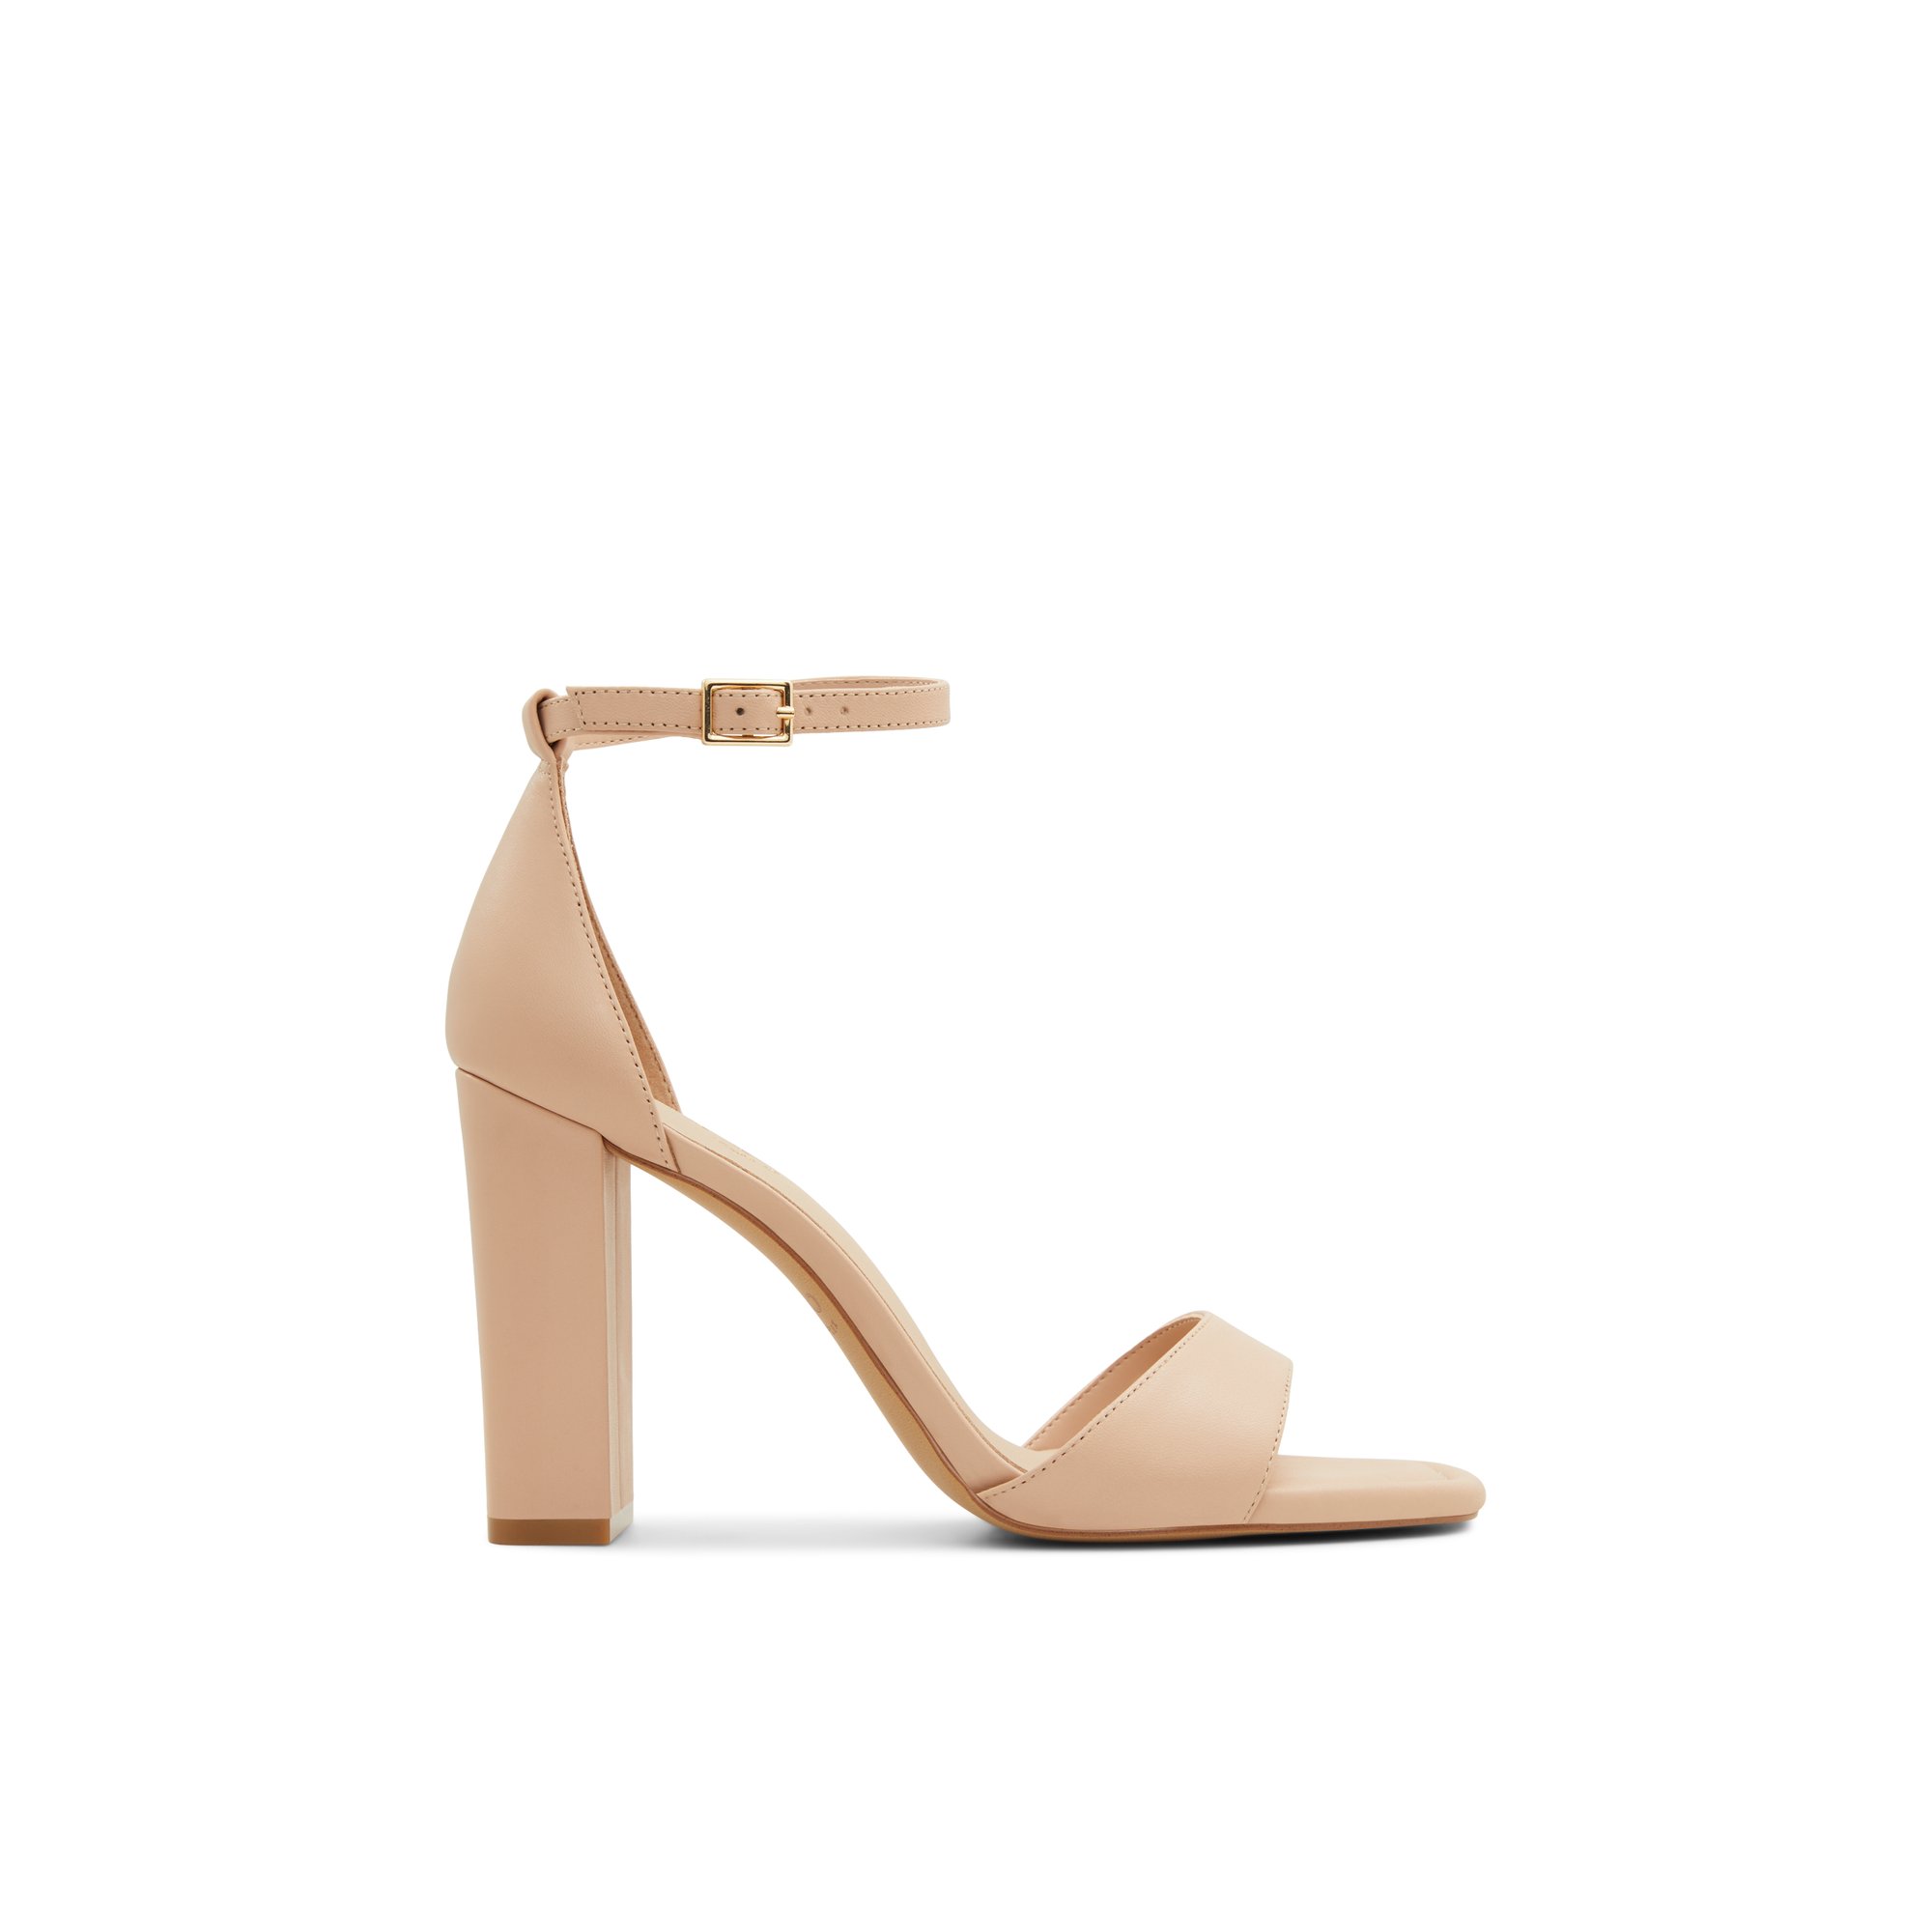 ALDO Enaegyn - Women's Heeled Sandal Sandals - Beige